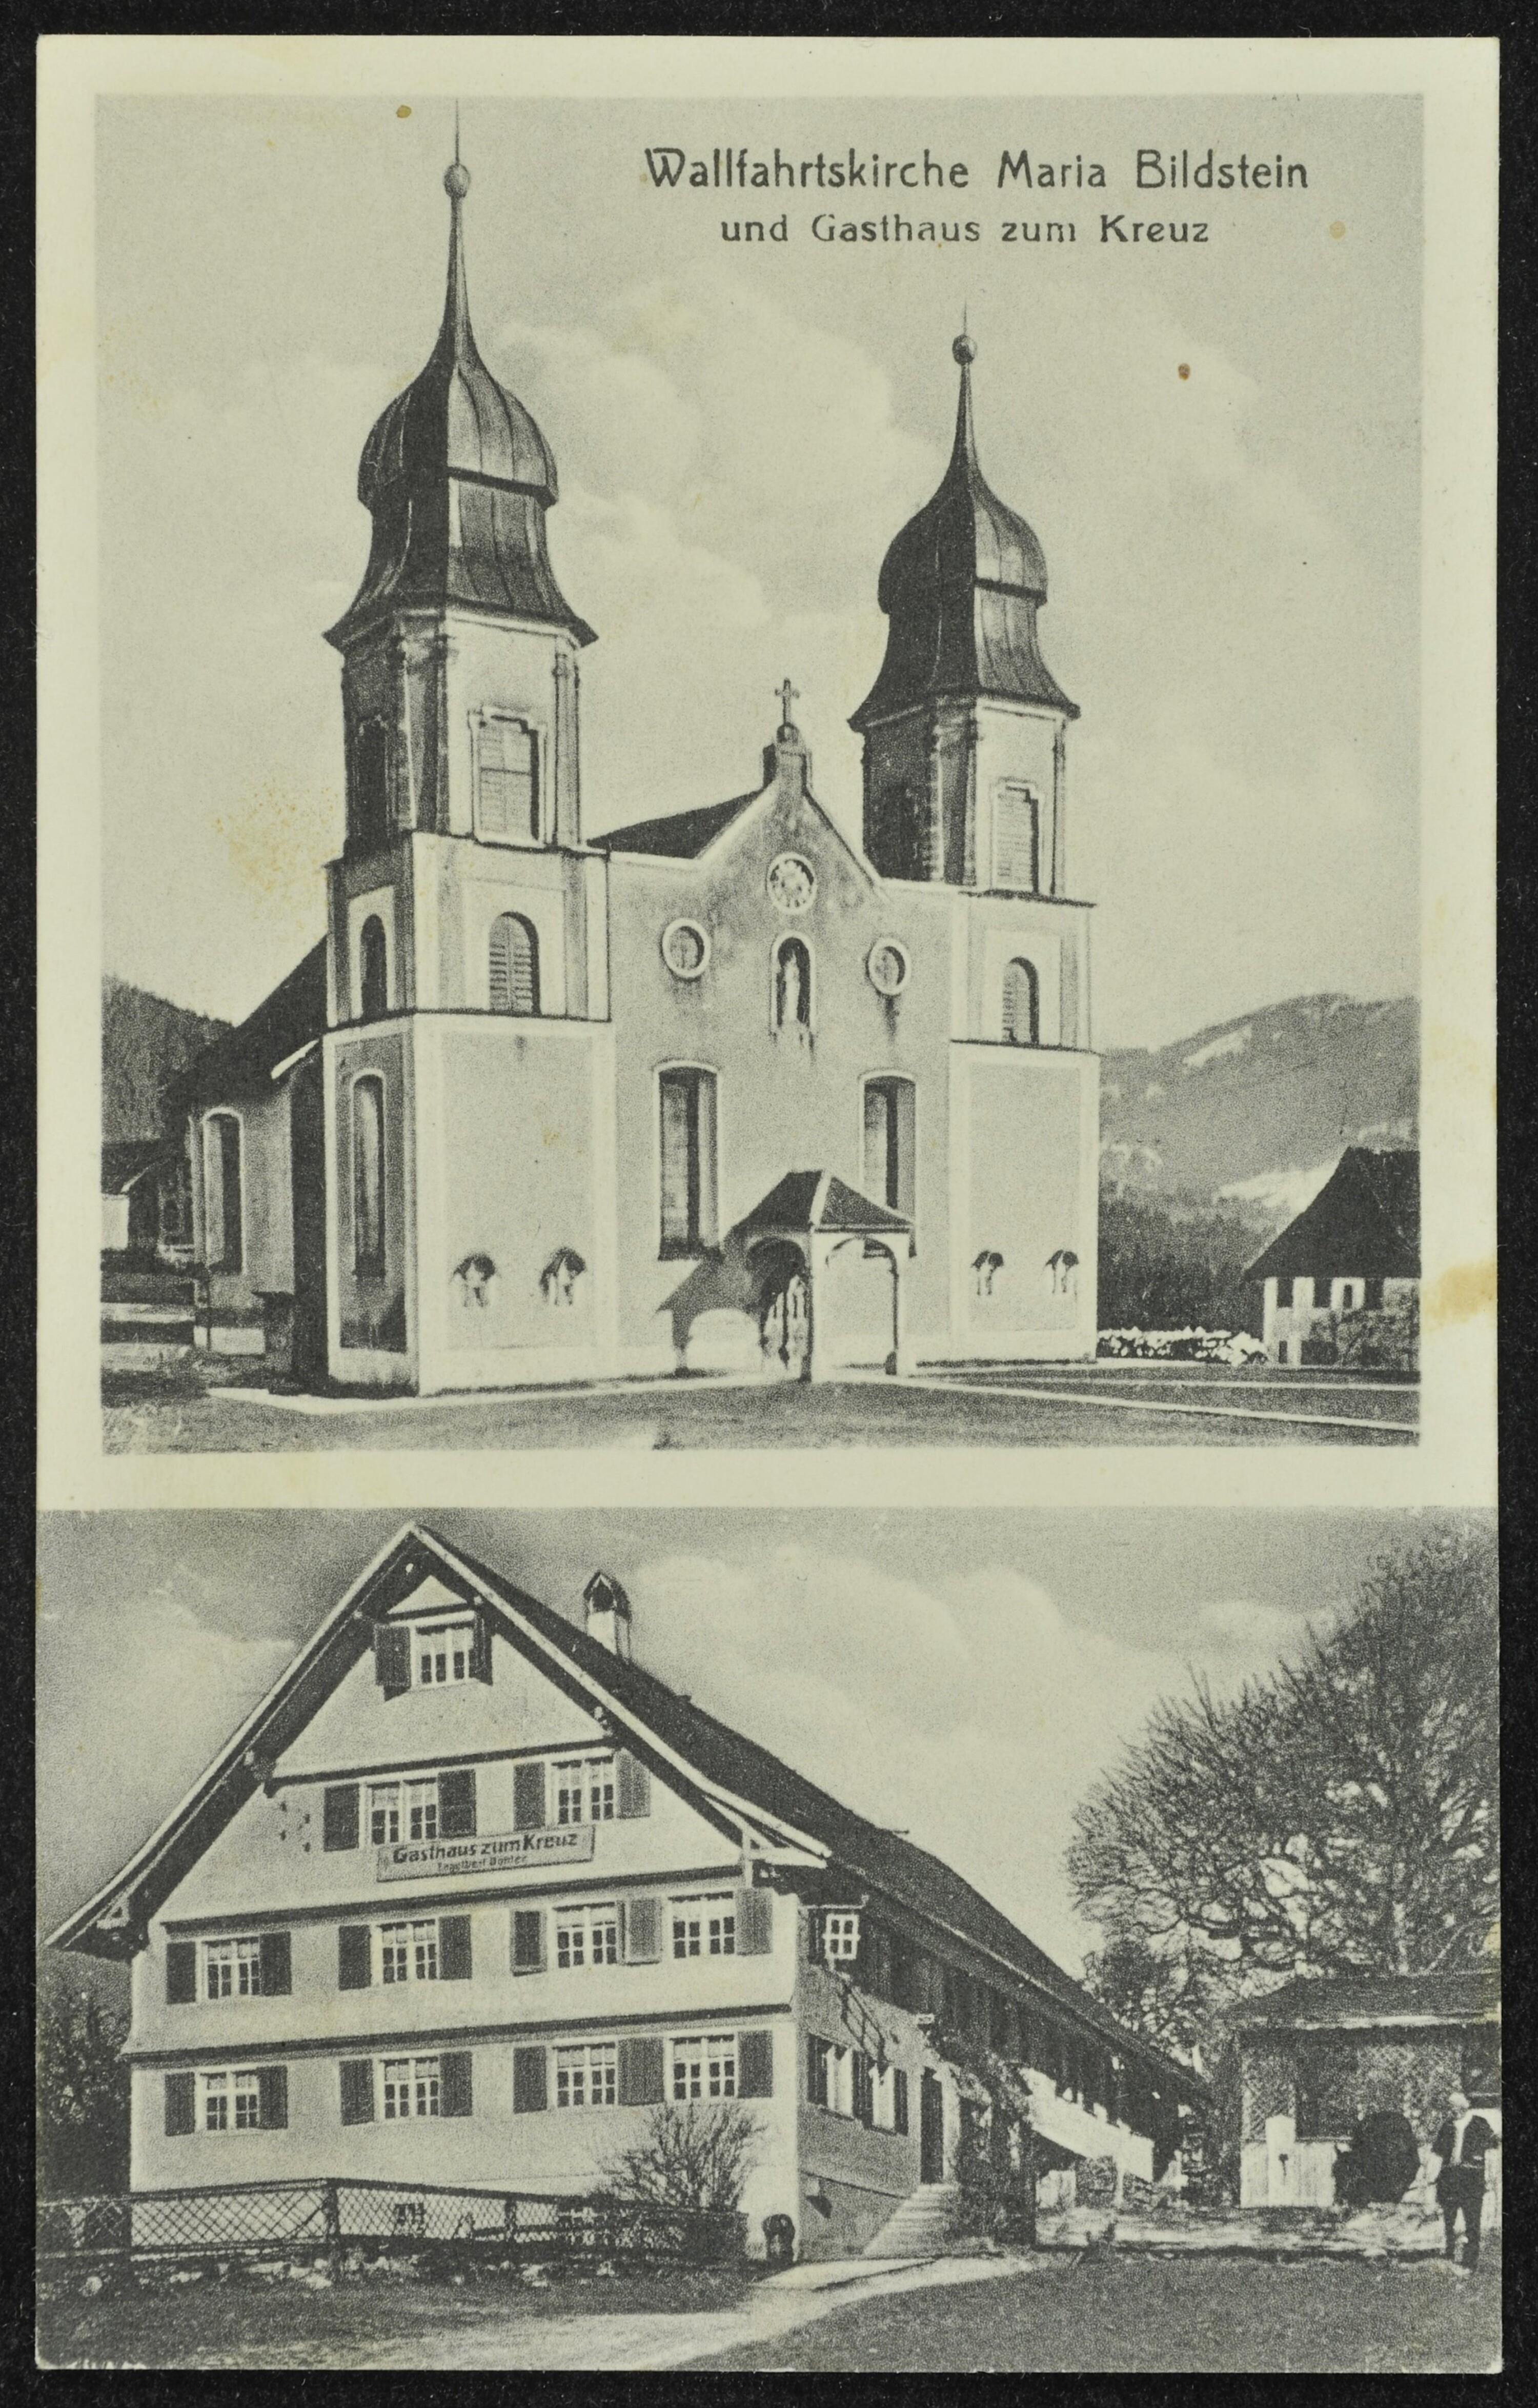 [Bildstein] Wallfahrtskirche Maria Bildstein und Gasthaus zum Kreuz></div>


    <hr>
    <div class=